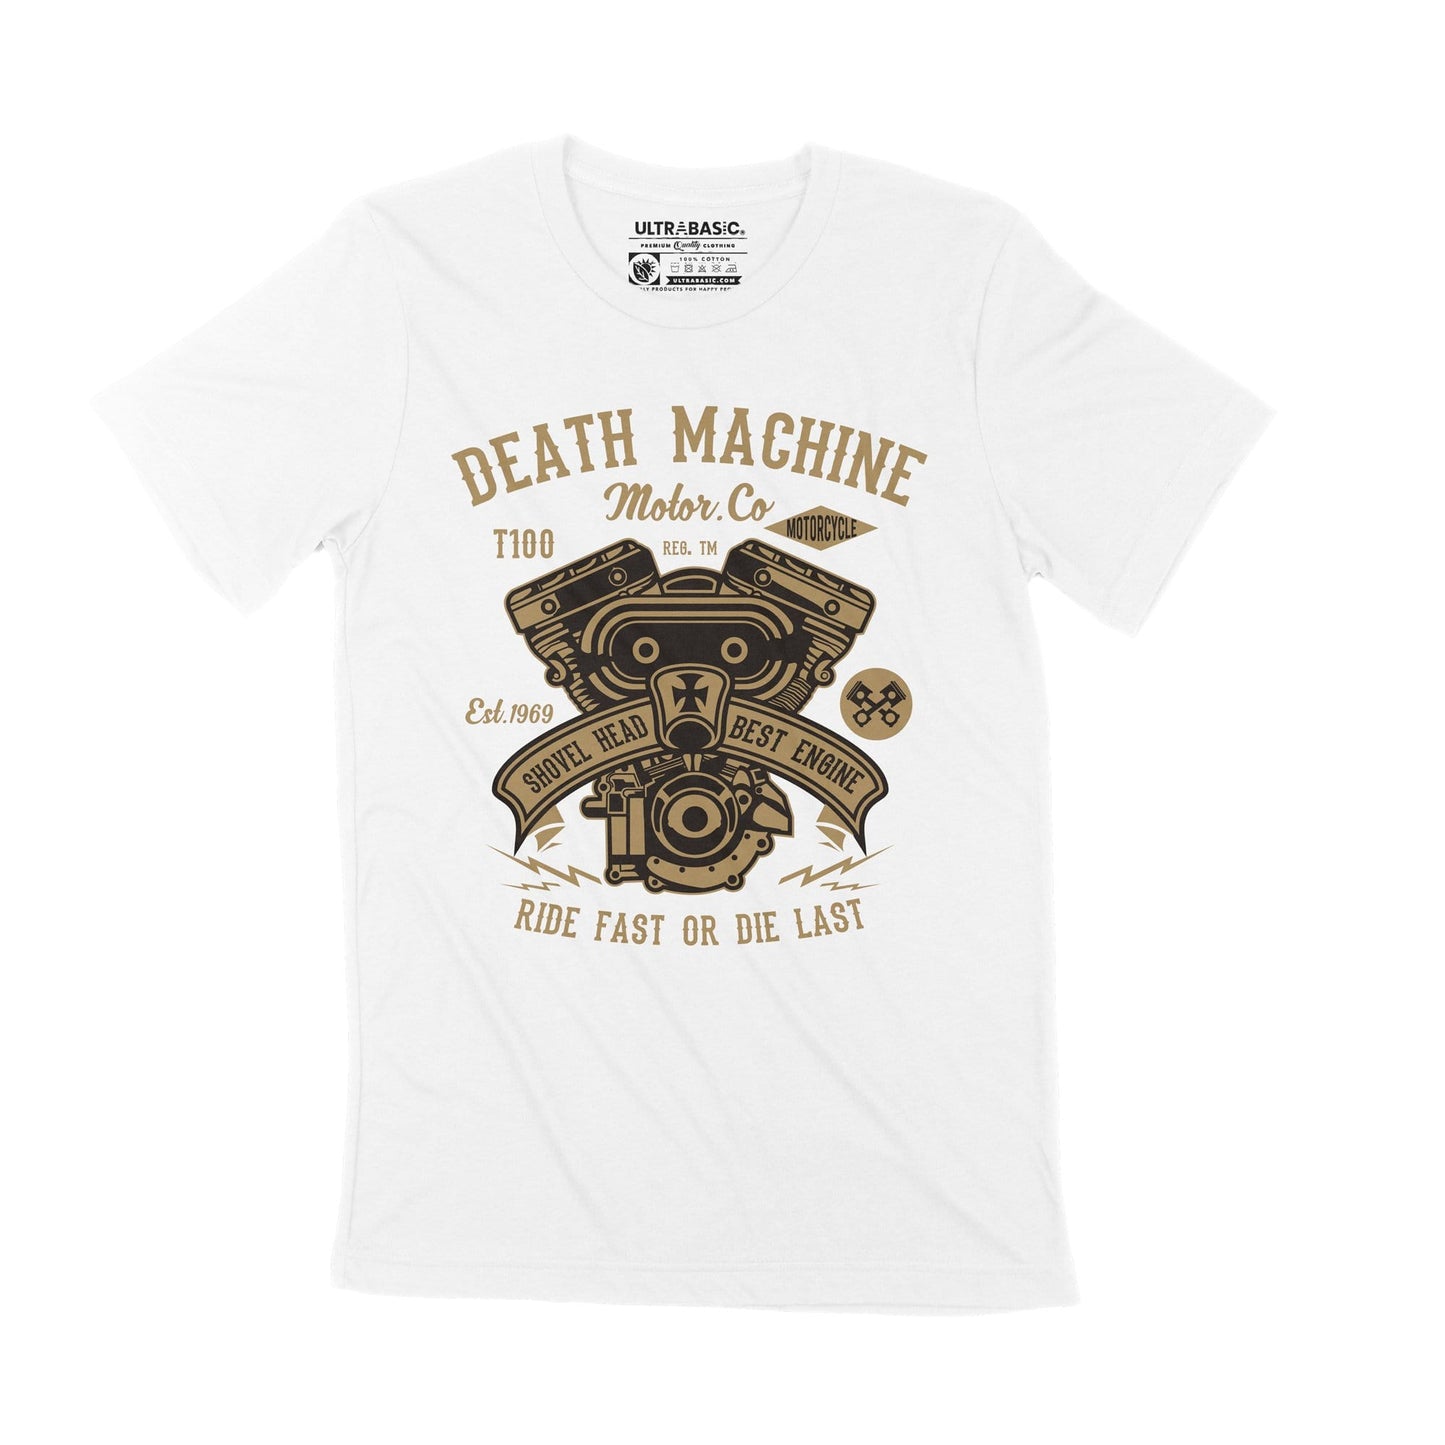 ULTRABASIC Men's T-Shirt Death Machine - Ride Fast or Die Last - Biker Since 1969